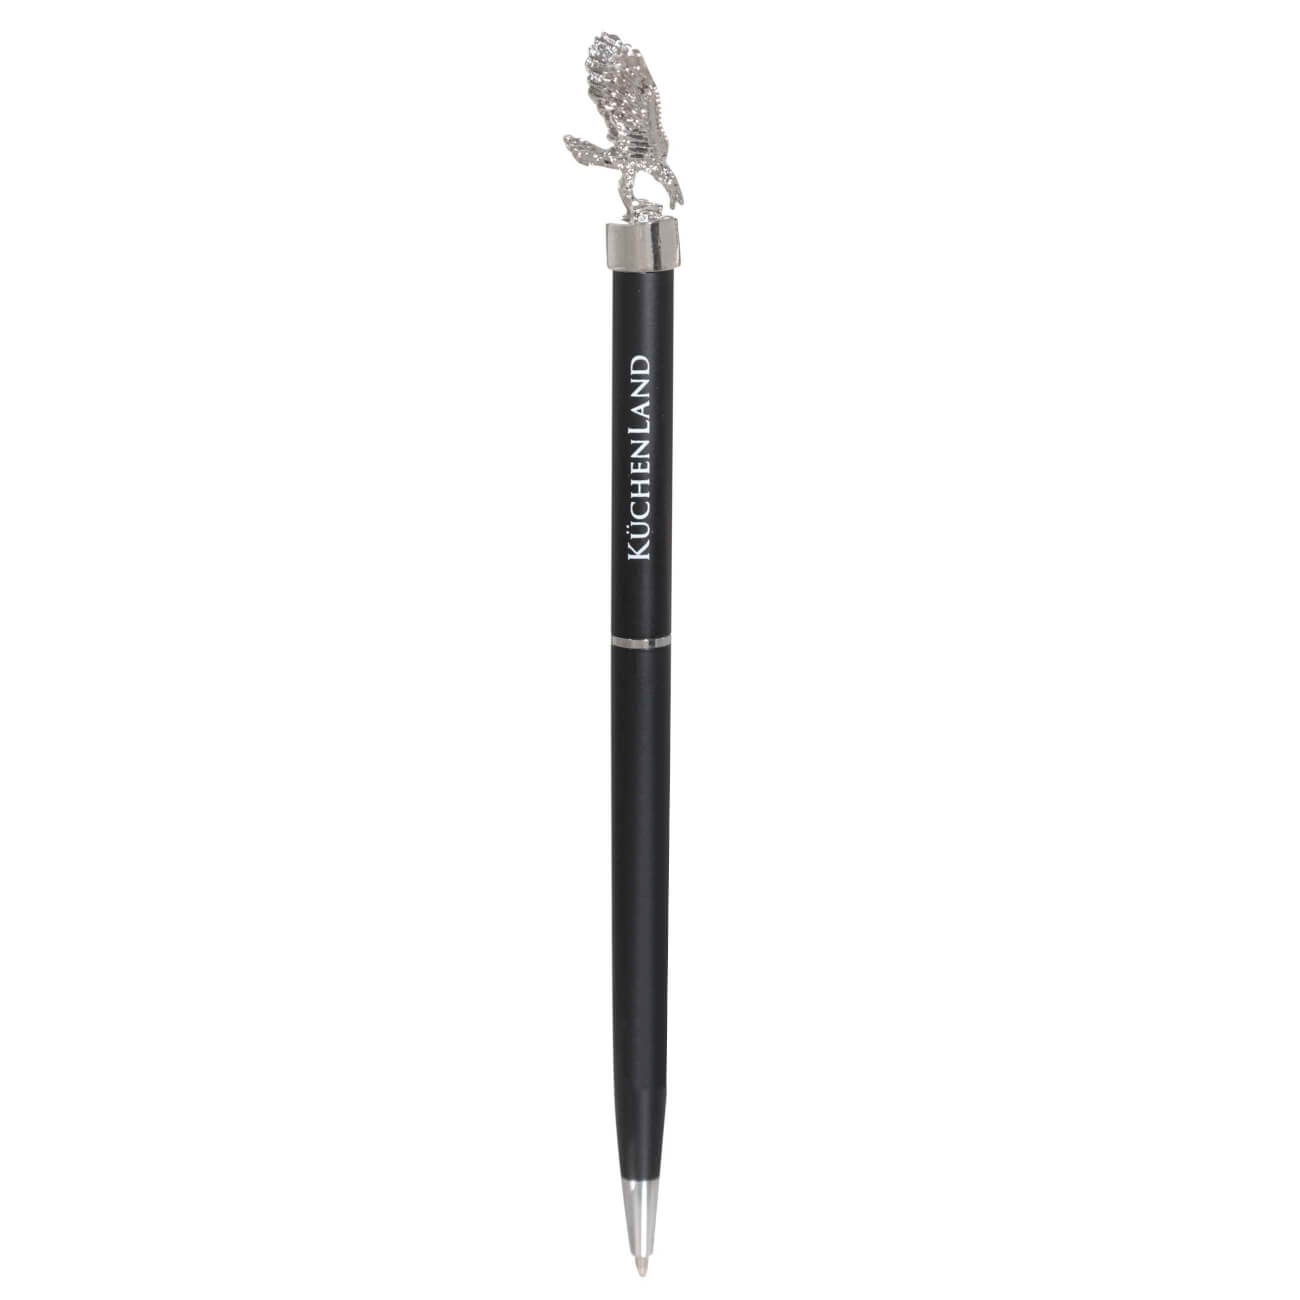 Ручка шариковая, 15 см, с фигуркой, сталь, черная, Орел, Draw figure